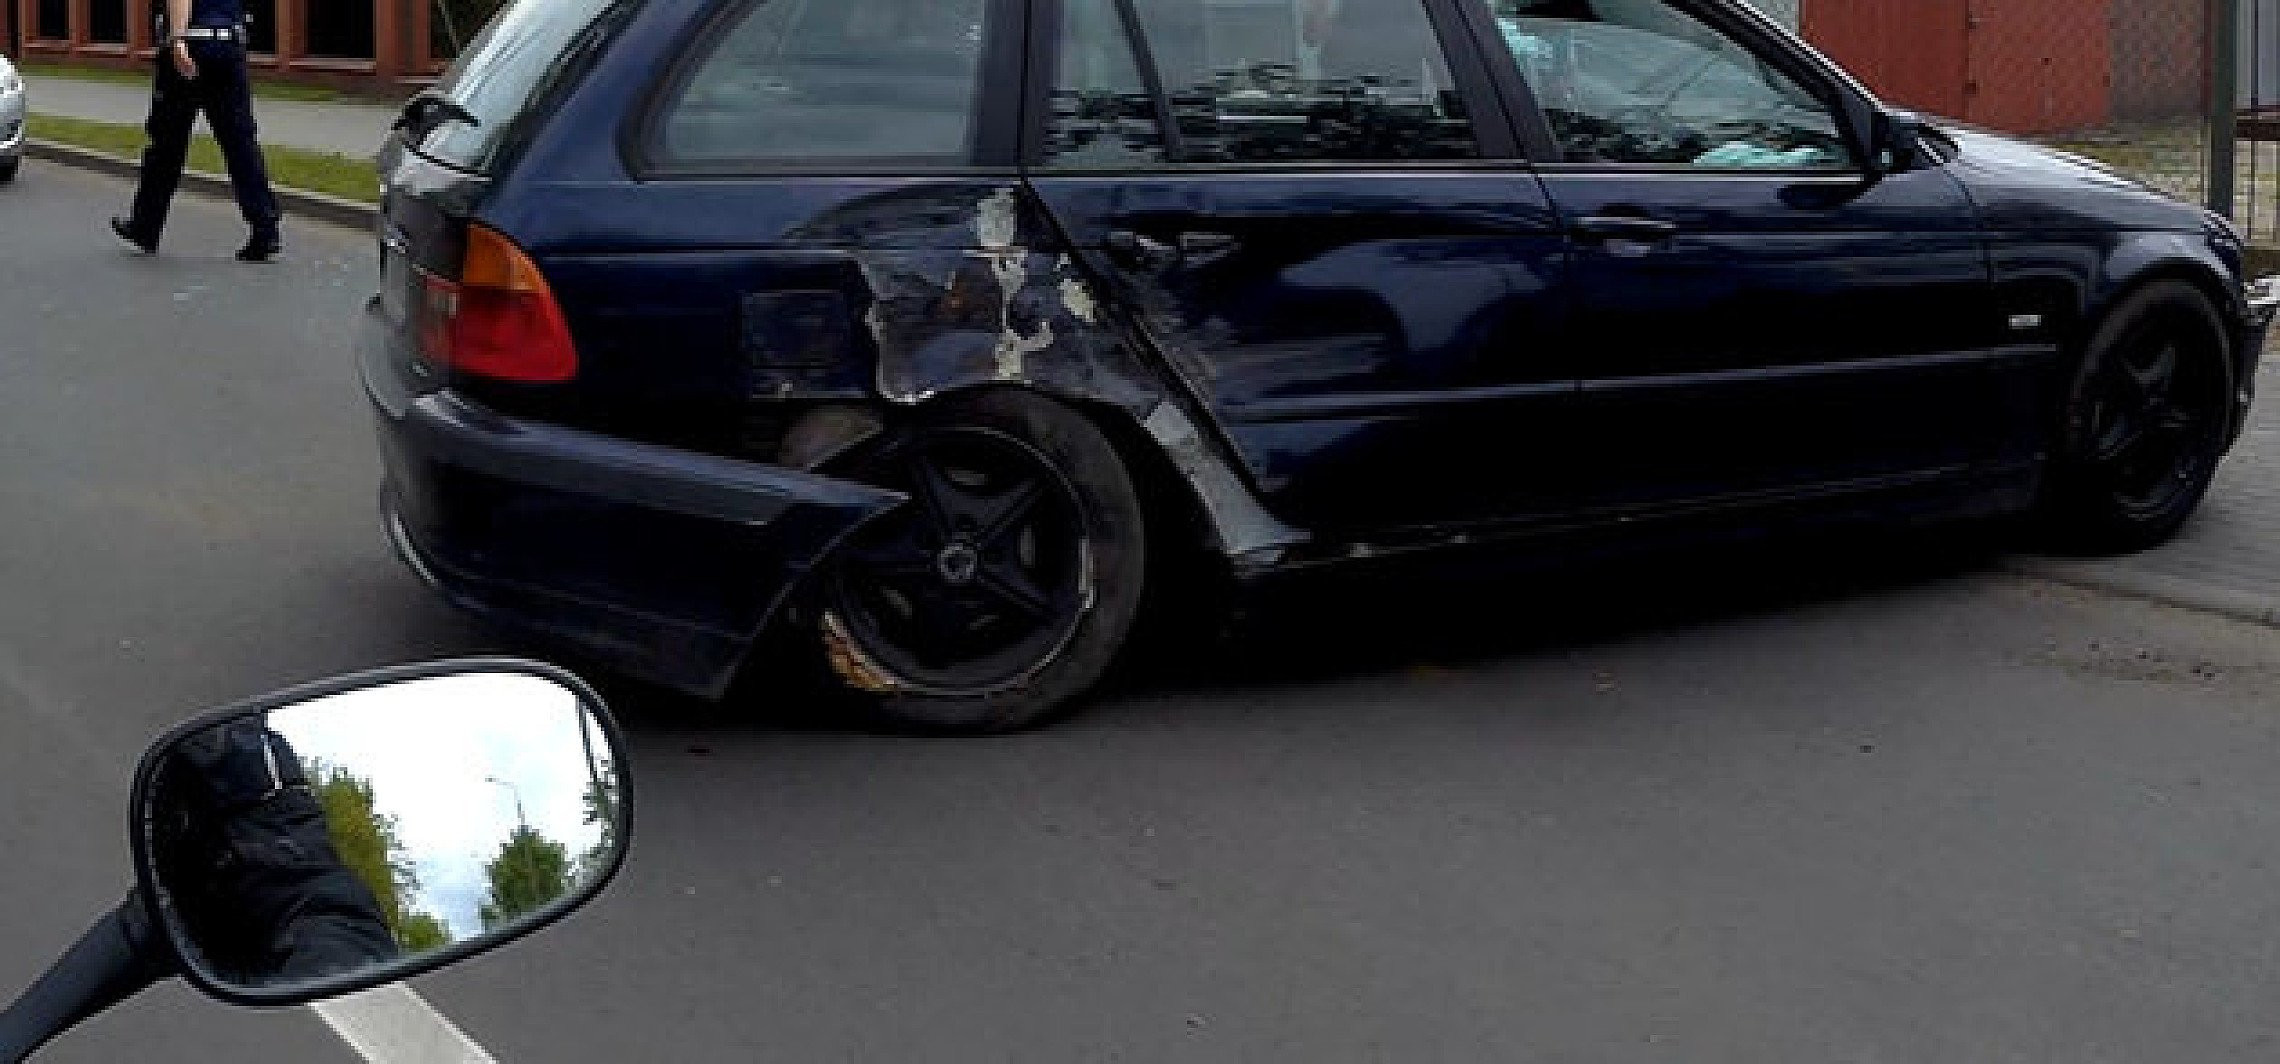 Inowrocław - BMW uderzyło w latarnię